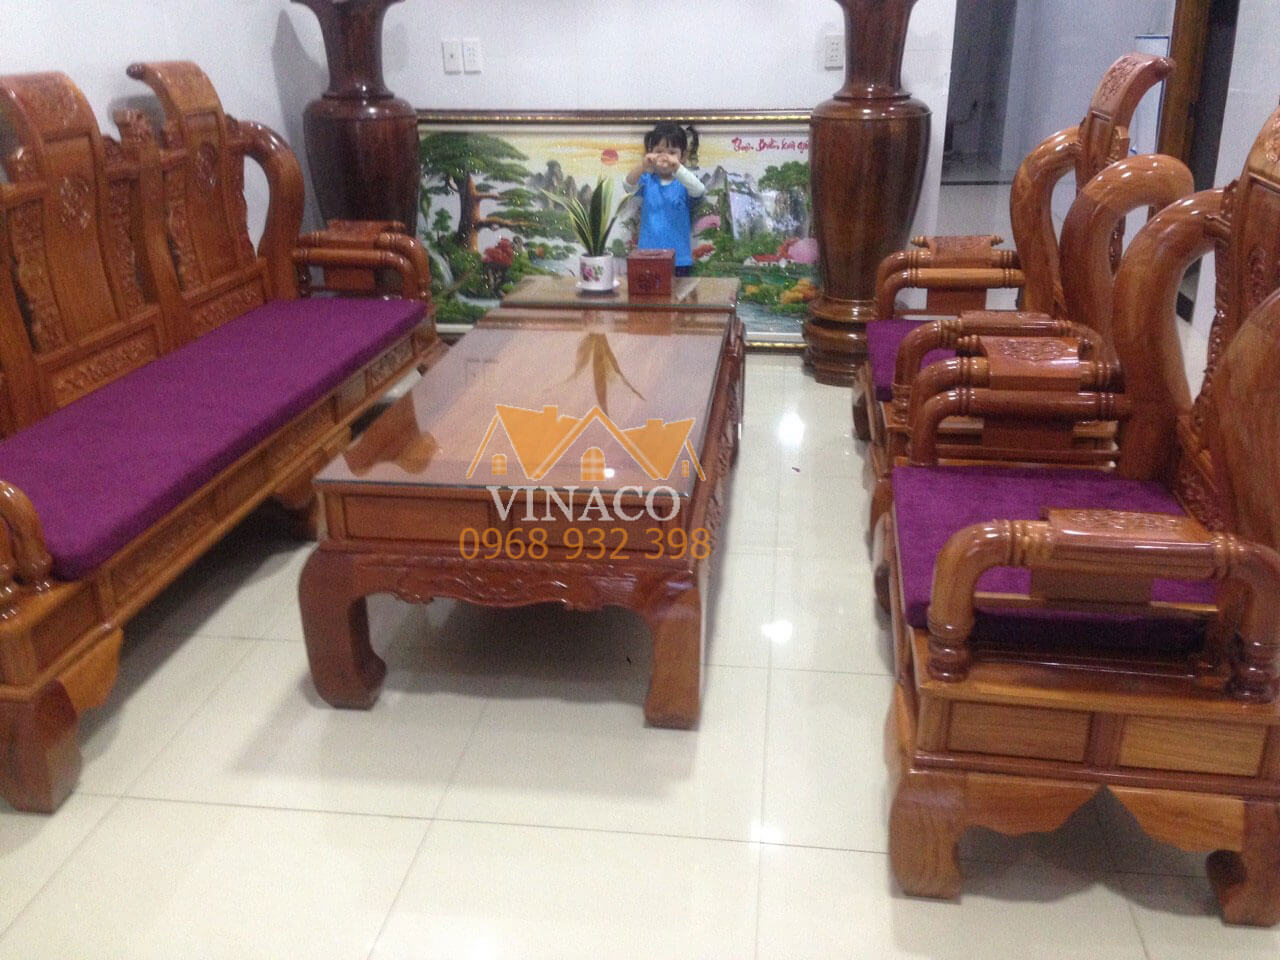 làm đệm ghế gỗ đẹp giá rẻ quận Tây Hồ Hà Nội